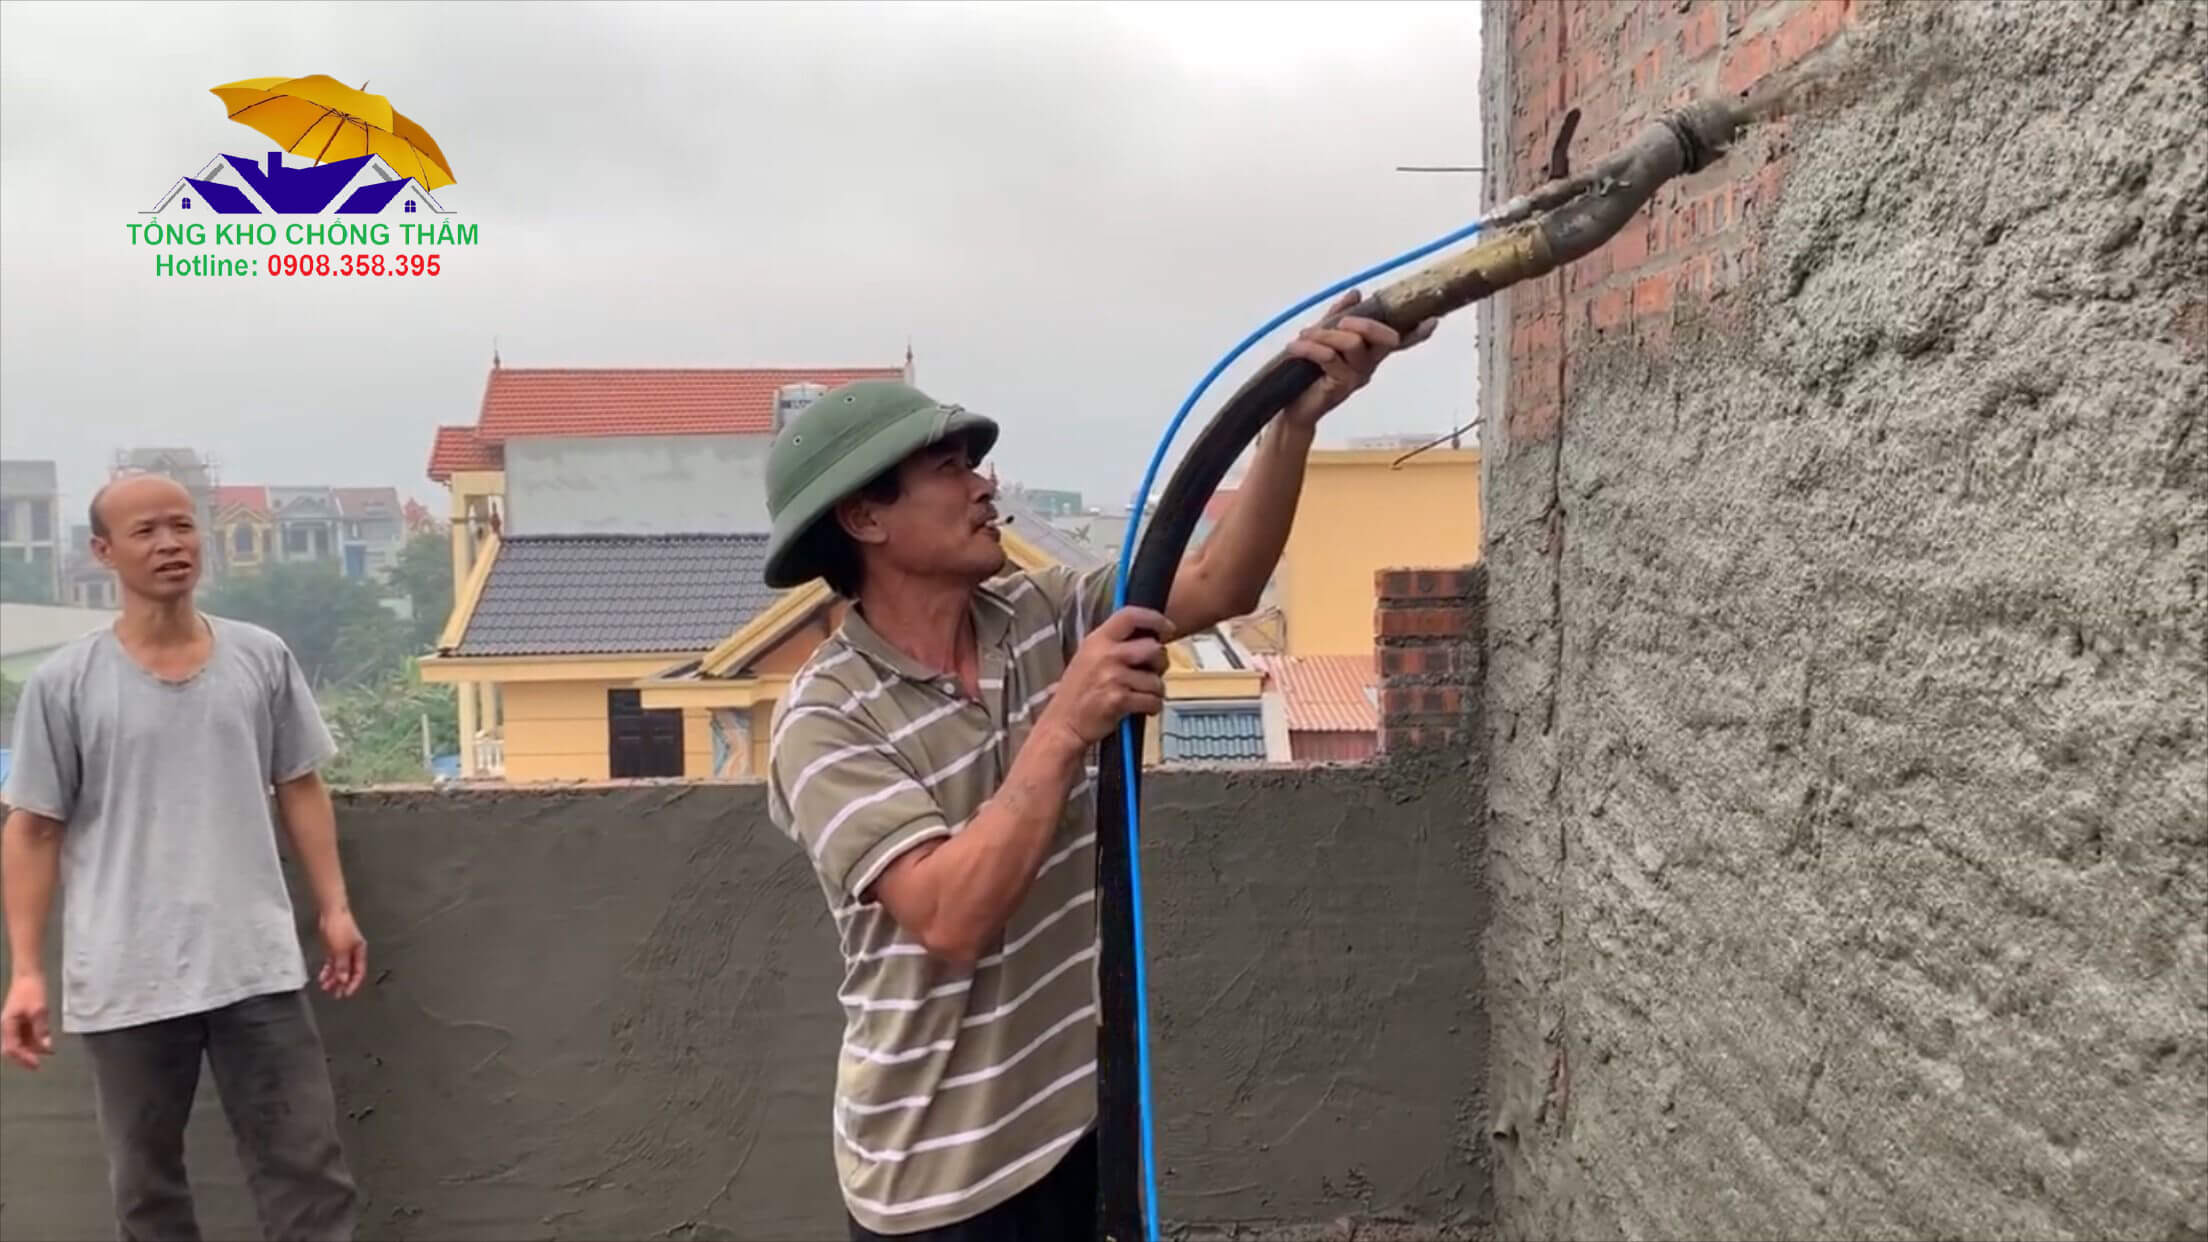 Hướng dẫn cách sử dụng máy phun vữa trát tường